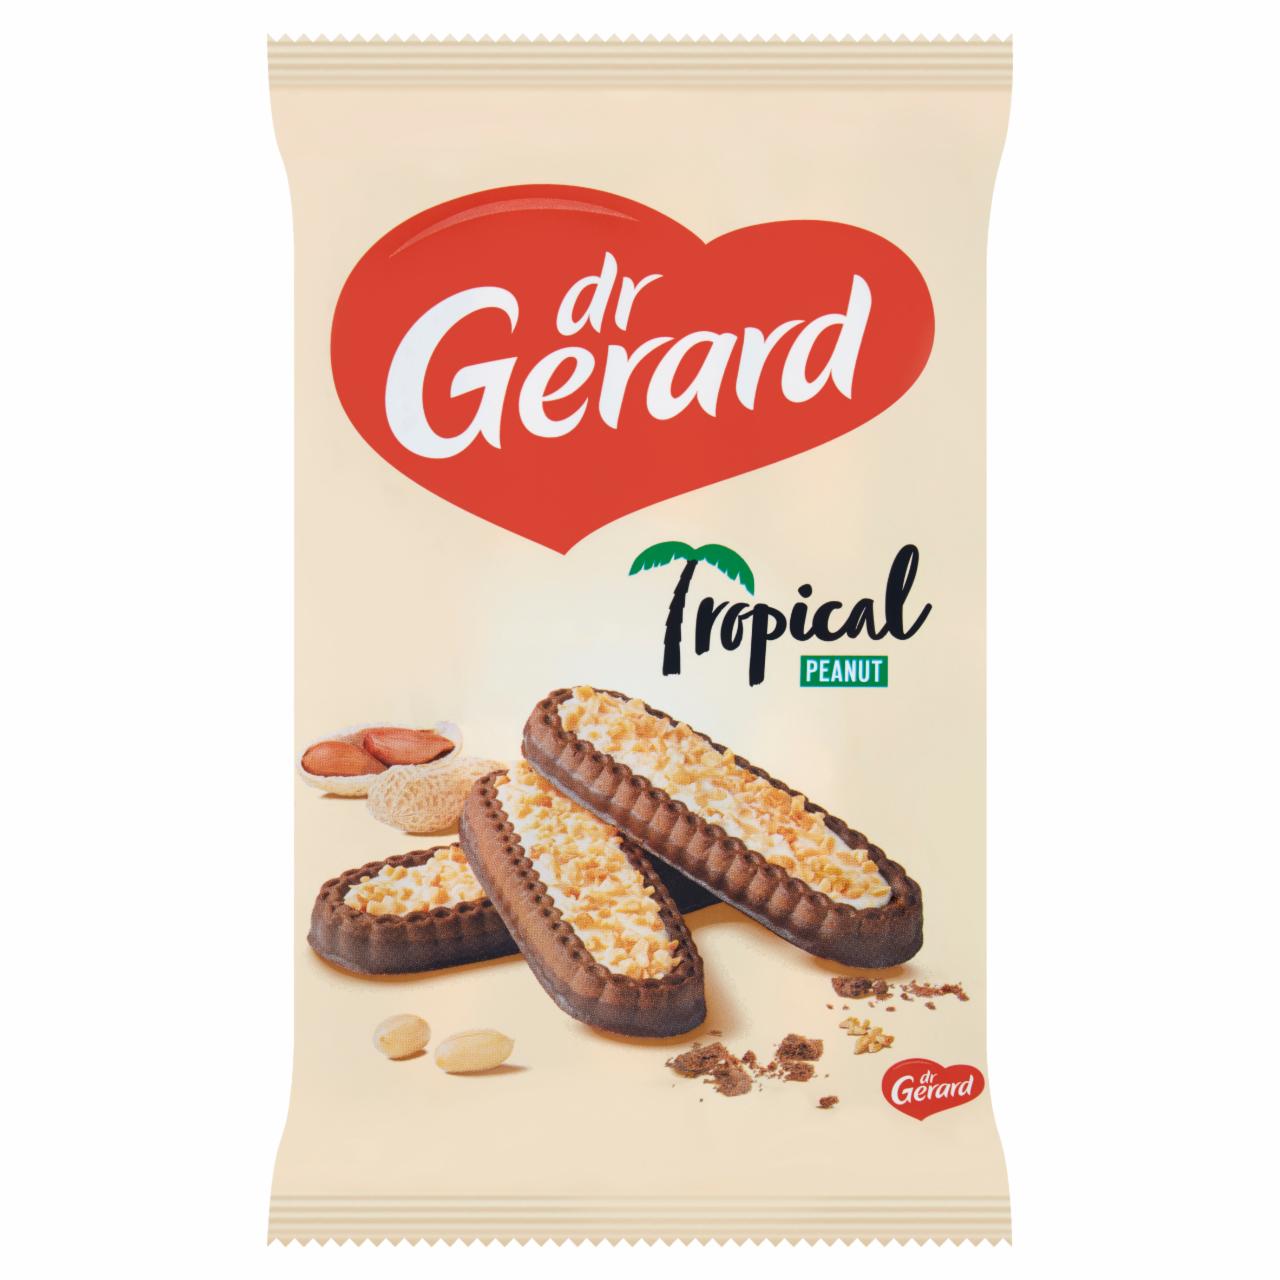 Zdjęcia - dr Gerard Tropical Peanut Herbatniki z kremem o smaku śmietankowym i polewą kakaową 300 g